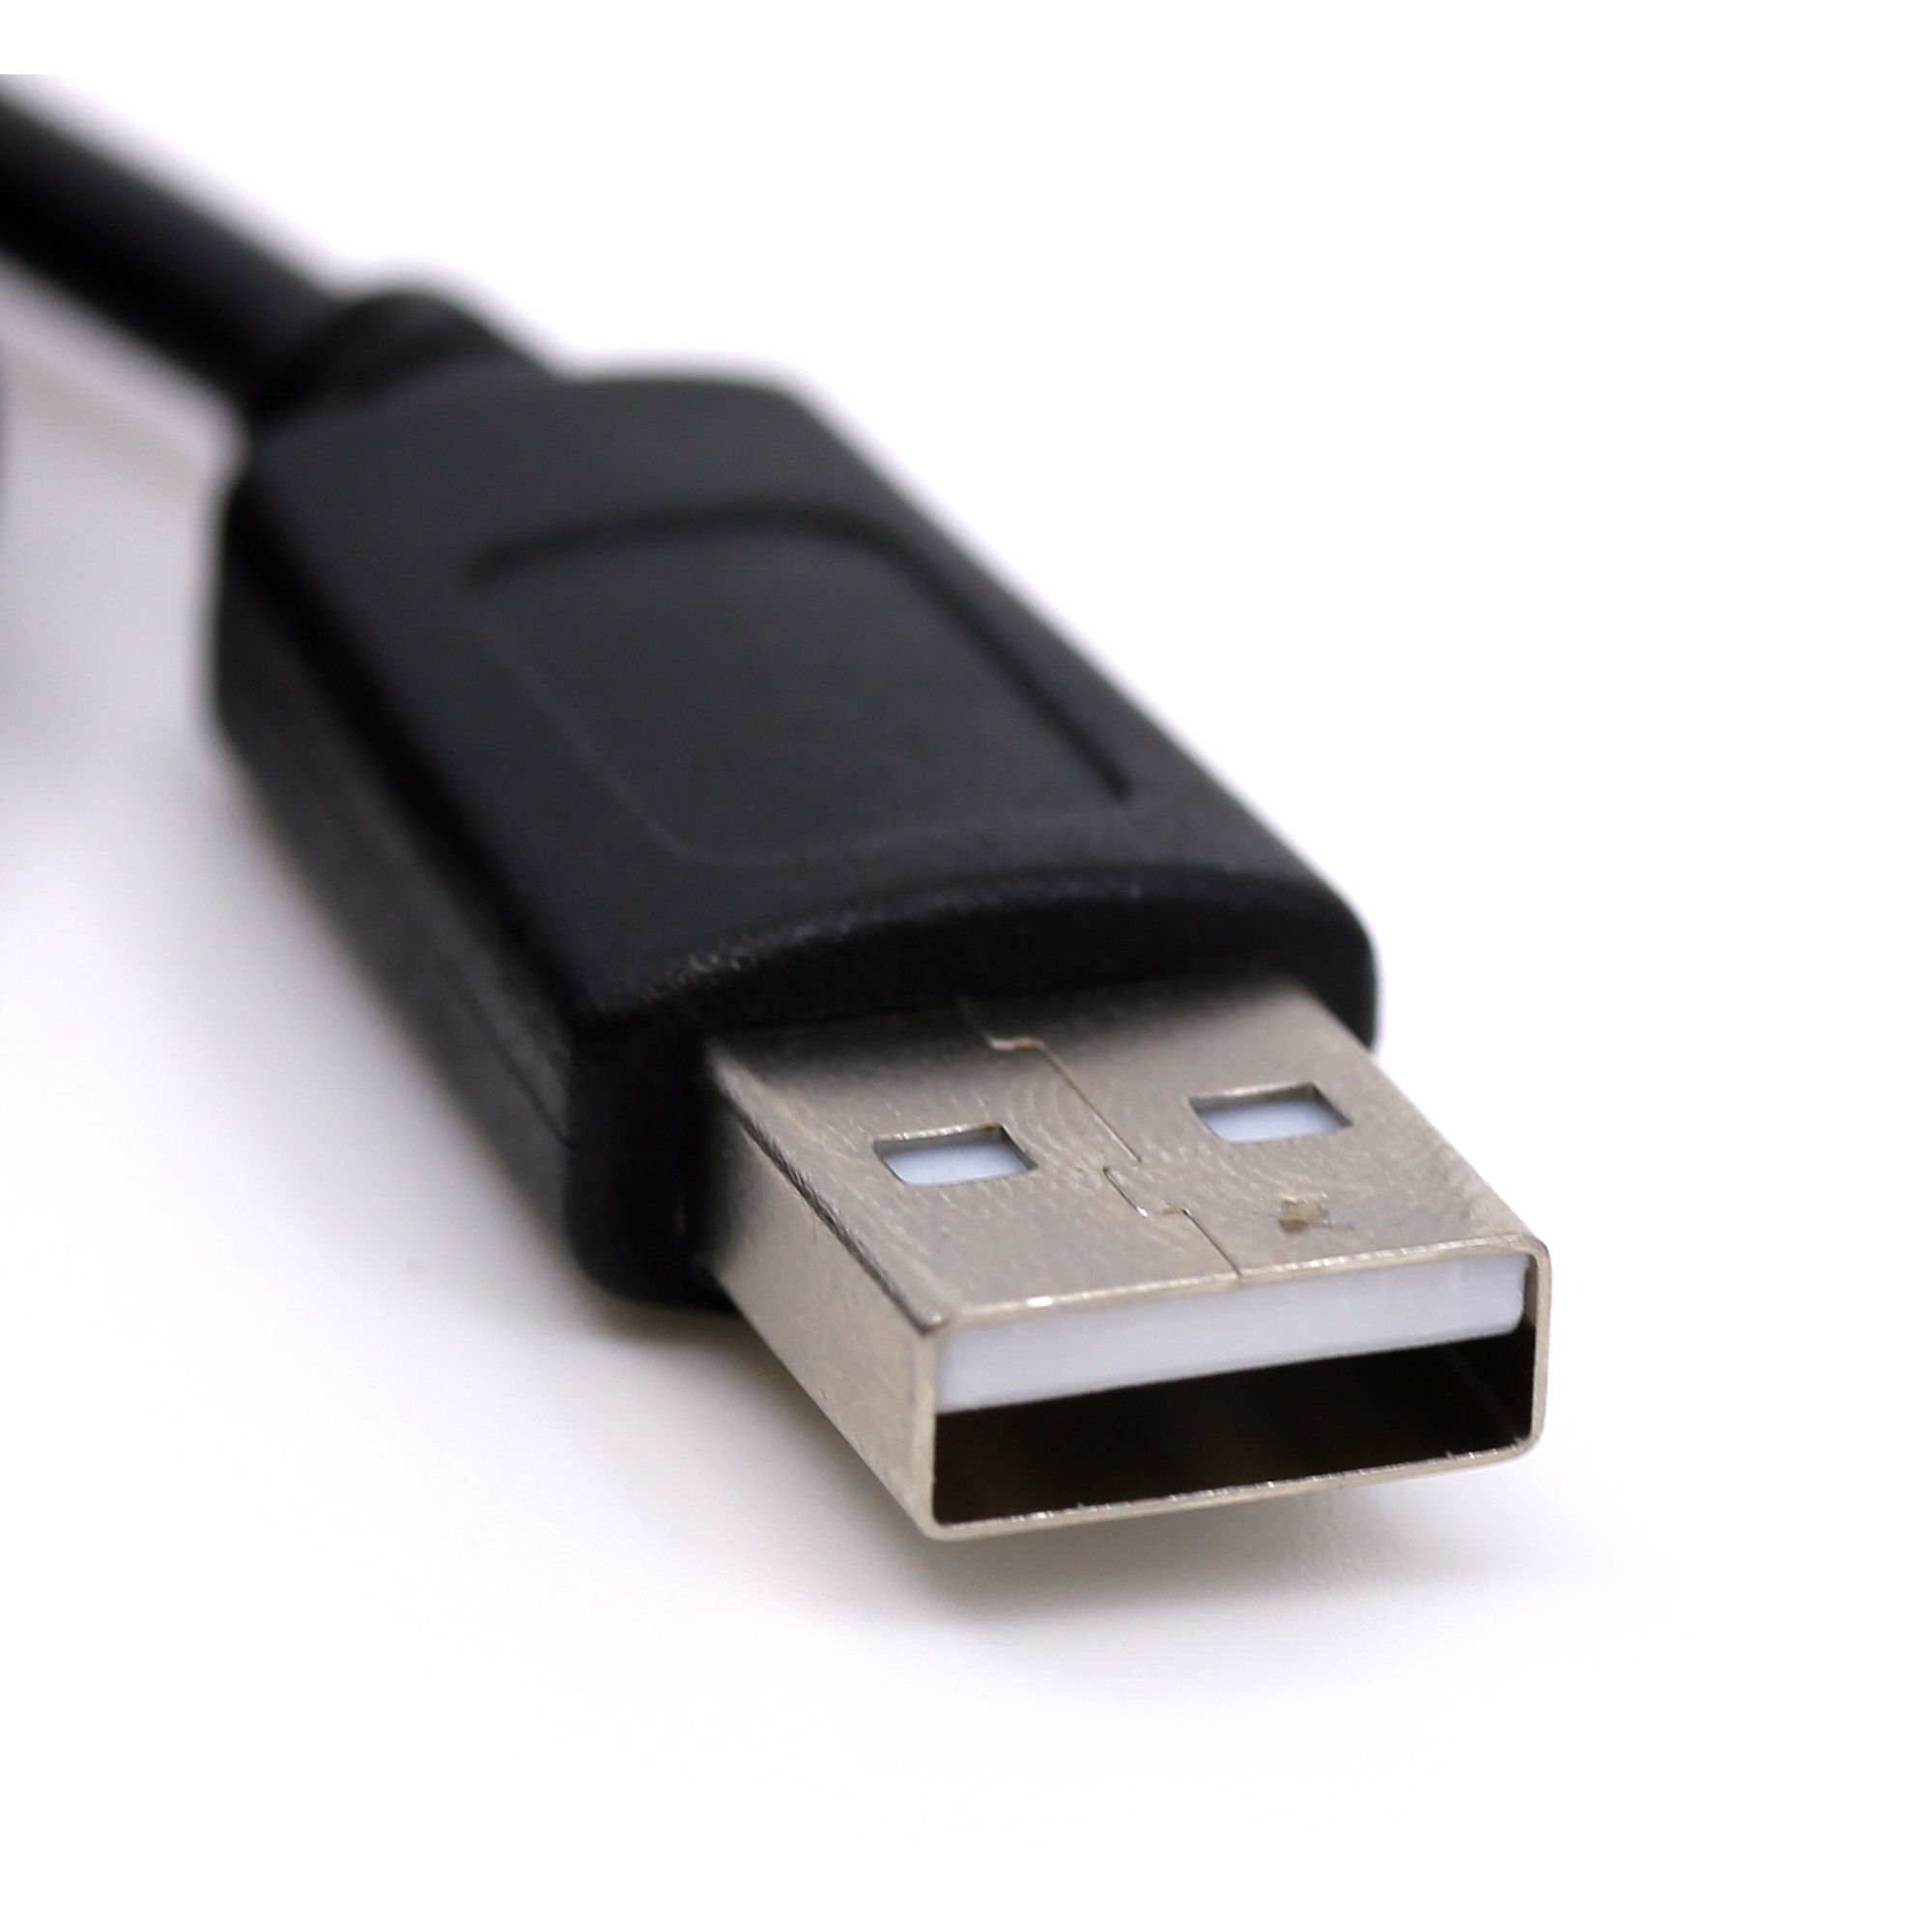 USB Datenkabel für Sony Cyber-shot DSC-WX350, DSC-WX500, DSC-RX100 V, DSC-RX100M2, DSC-RX100M3